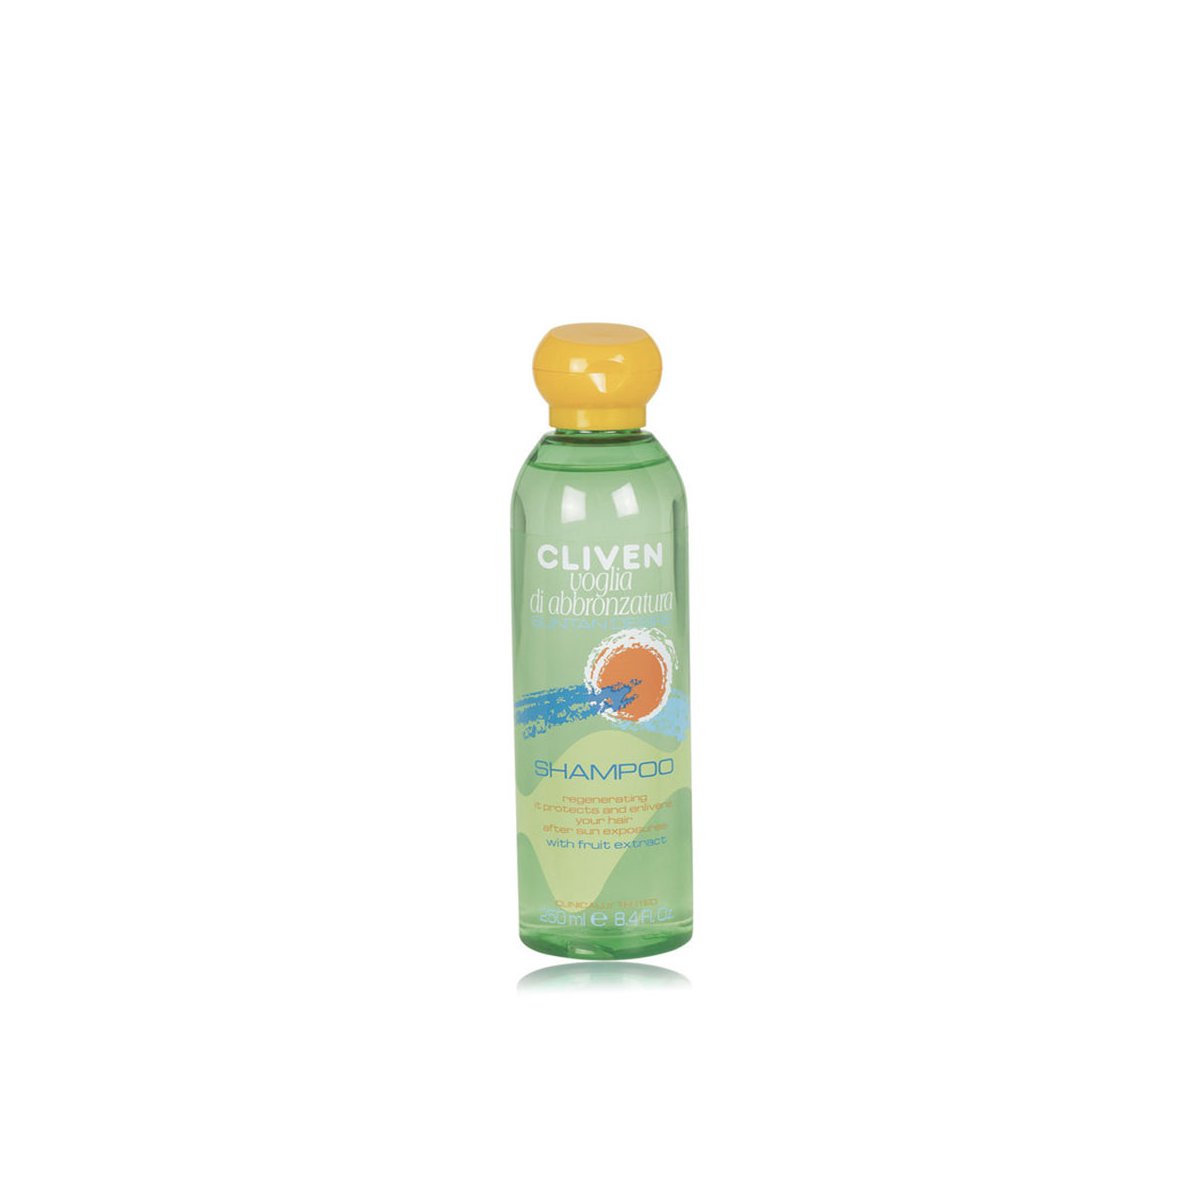 Voglia di Abbronzatura Shampoo Rigenerante, 250 ml